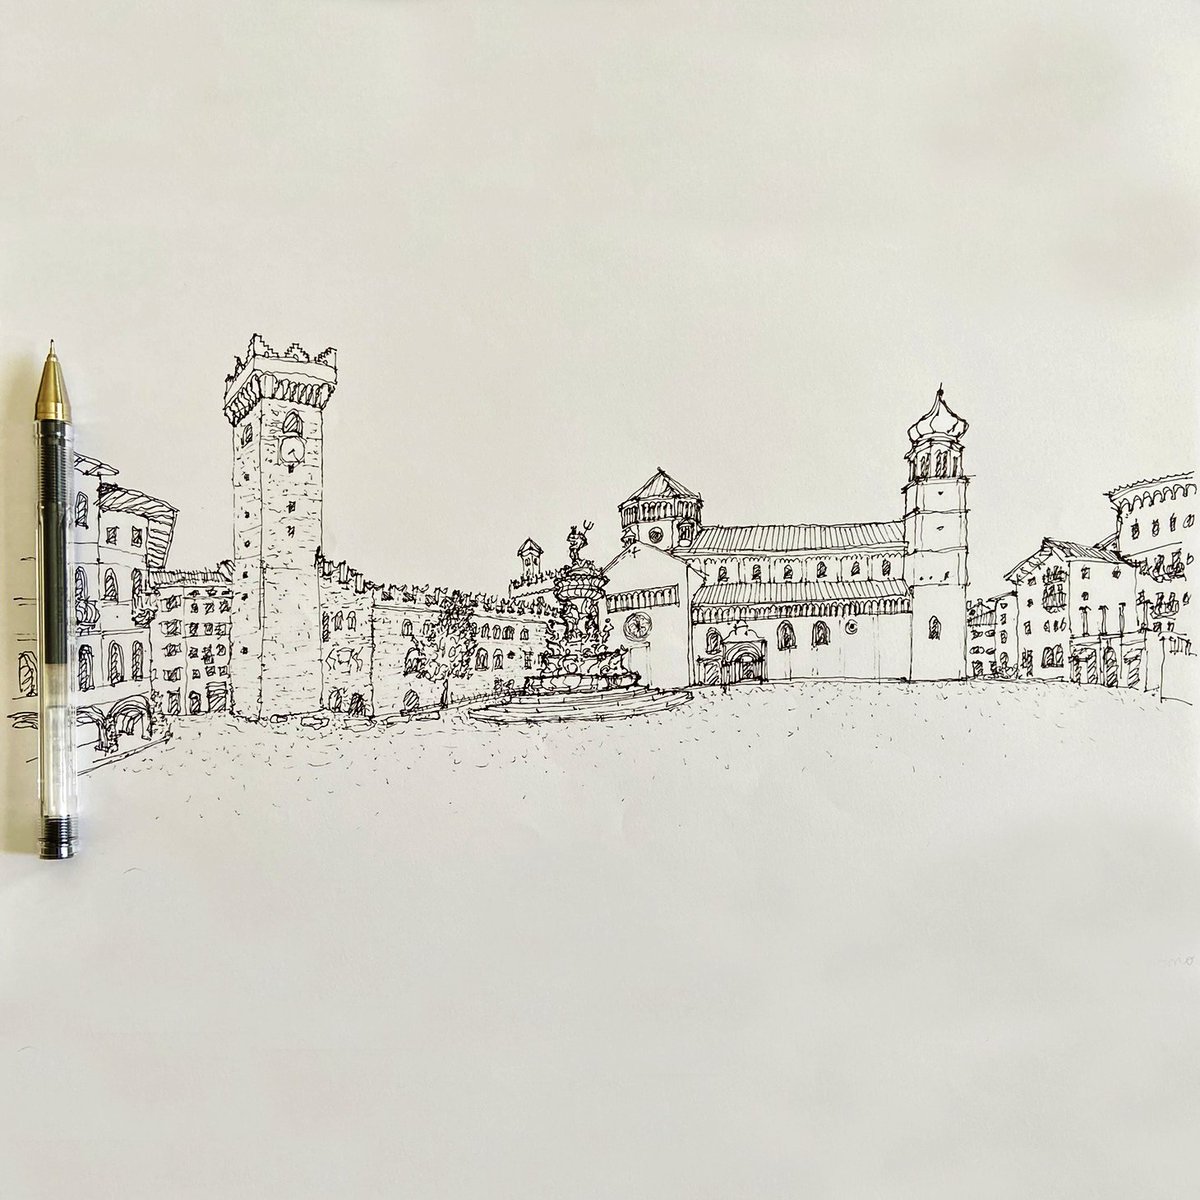 Sketch of Trento's Piazza del Duomo and surrounding architecture, including the Cattedrale di San Vigilio and Palazzo Pretorio. #Trento #PiazzaDelDuomo #CattedraleDiSanVigilio #PalazzoPretorio #Trentino #Italia #Italy #Art #Architecture #Travel #History #Sketch #UrbanSketch